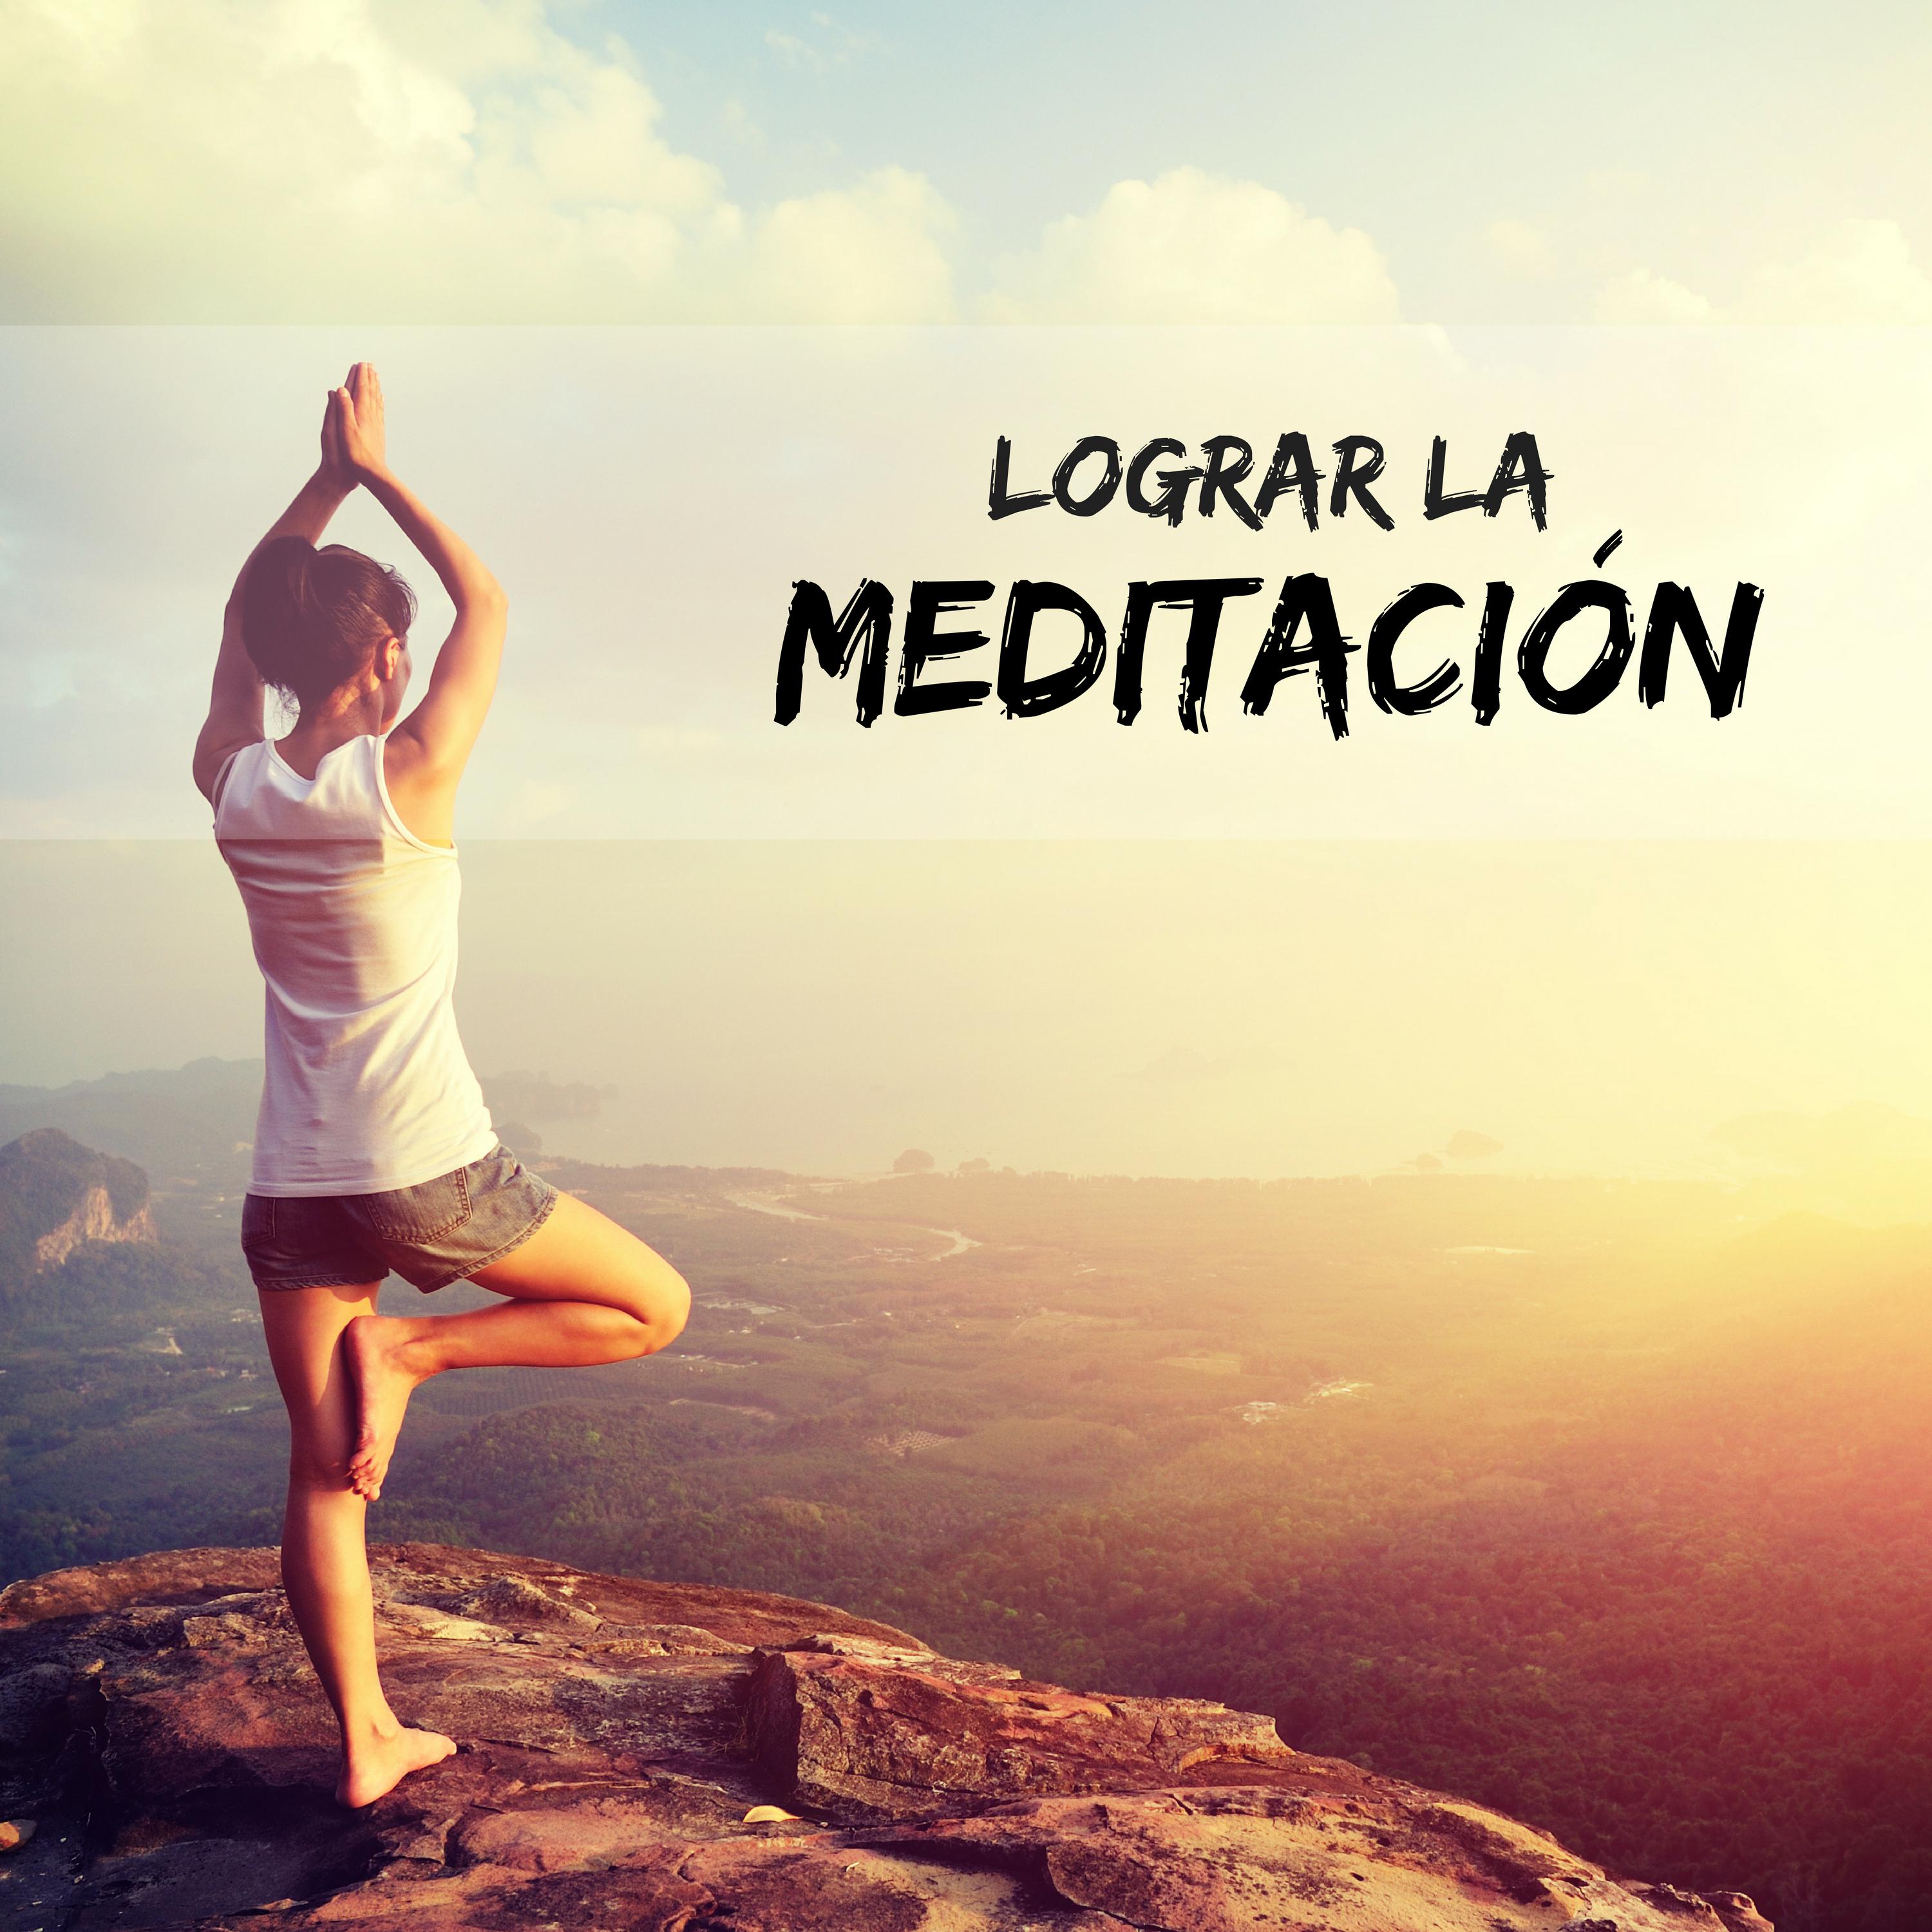 Lograr la Meditacio n  Musica Antiestres Ideada para Meditar y Relajarse